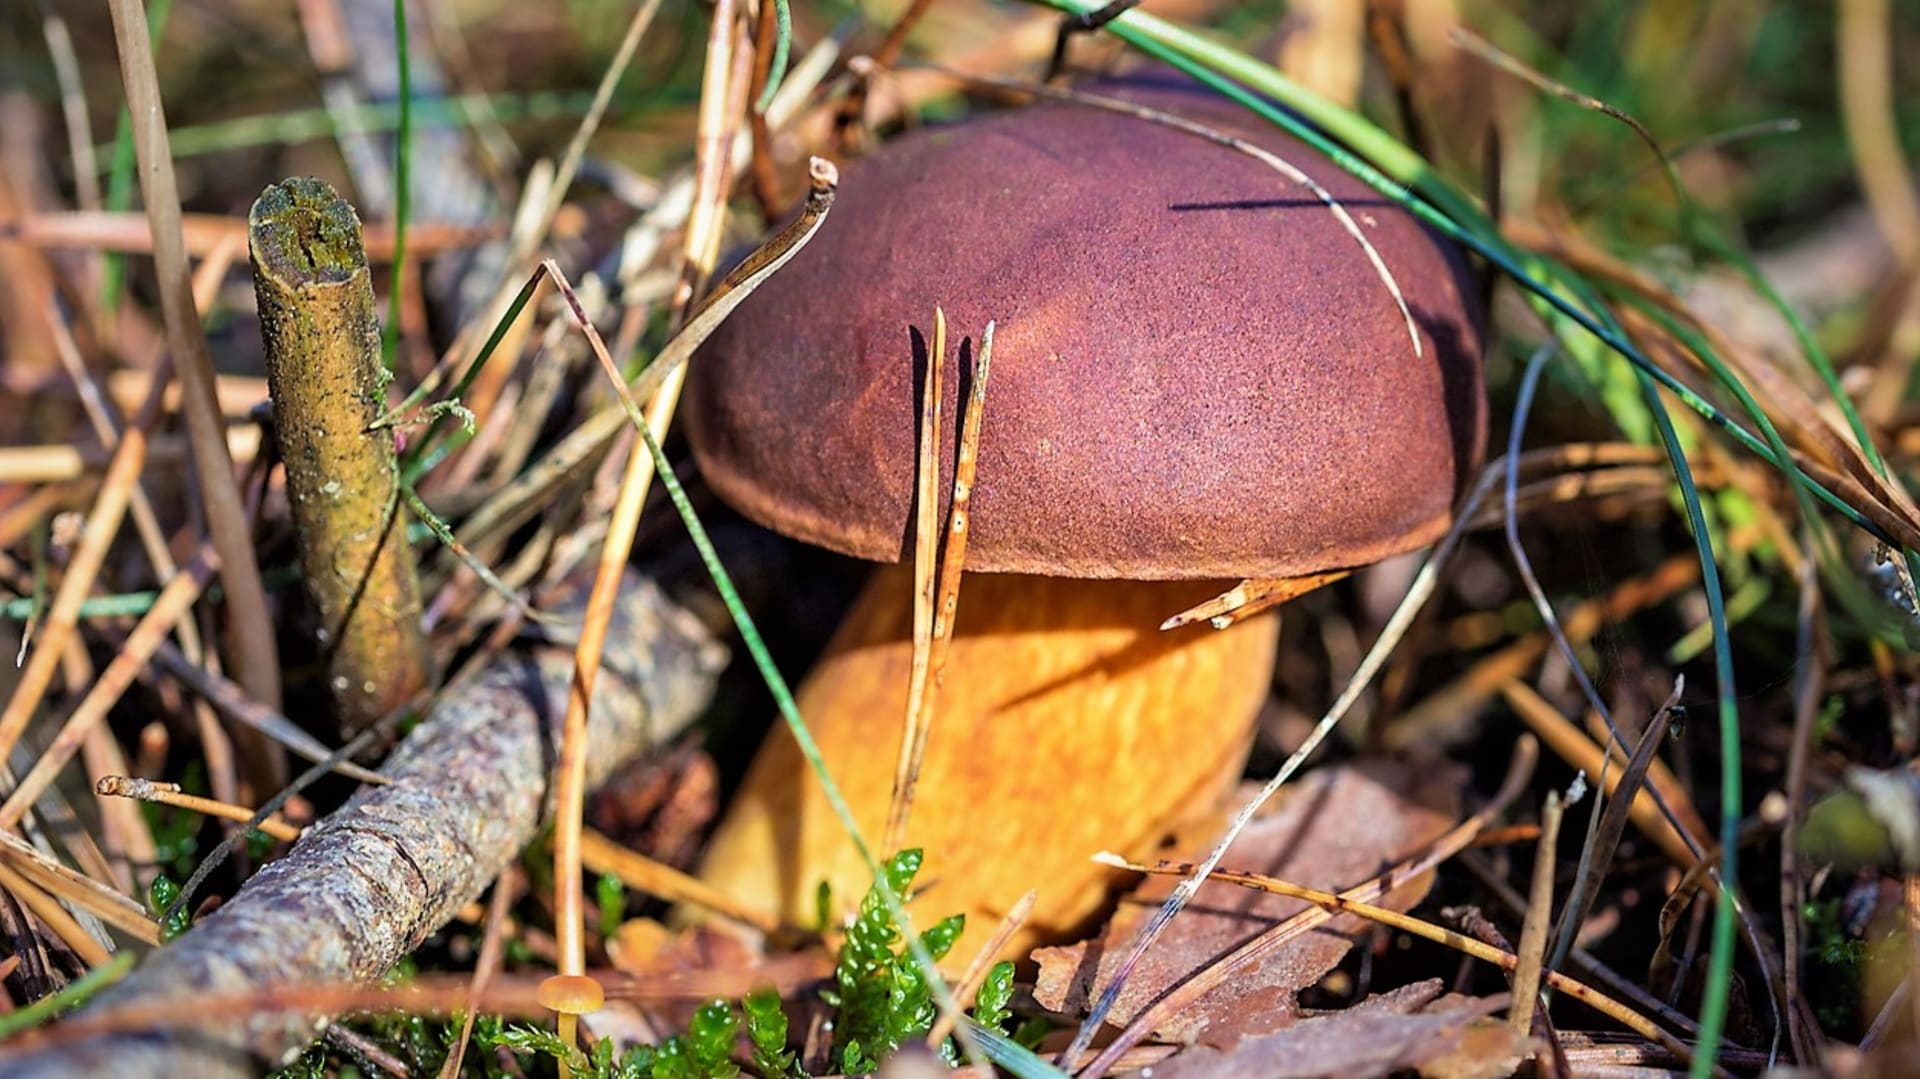 Hřib hnědý je nejznámější česká jedlá houba. Kde a kdy ho hledat